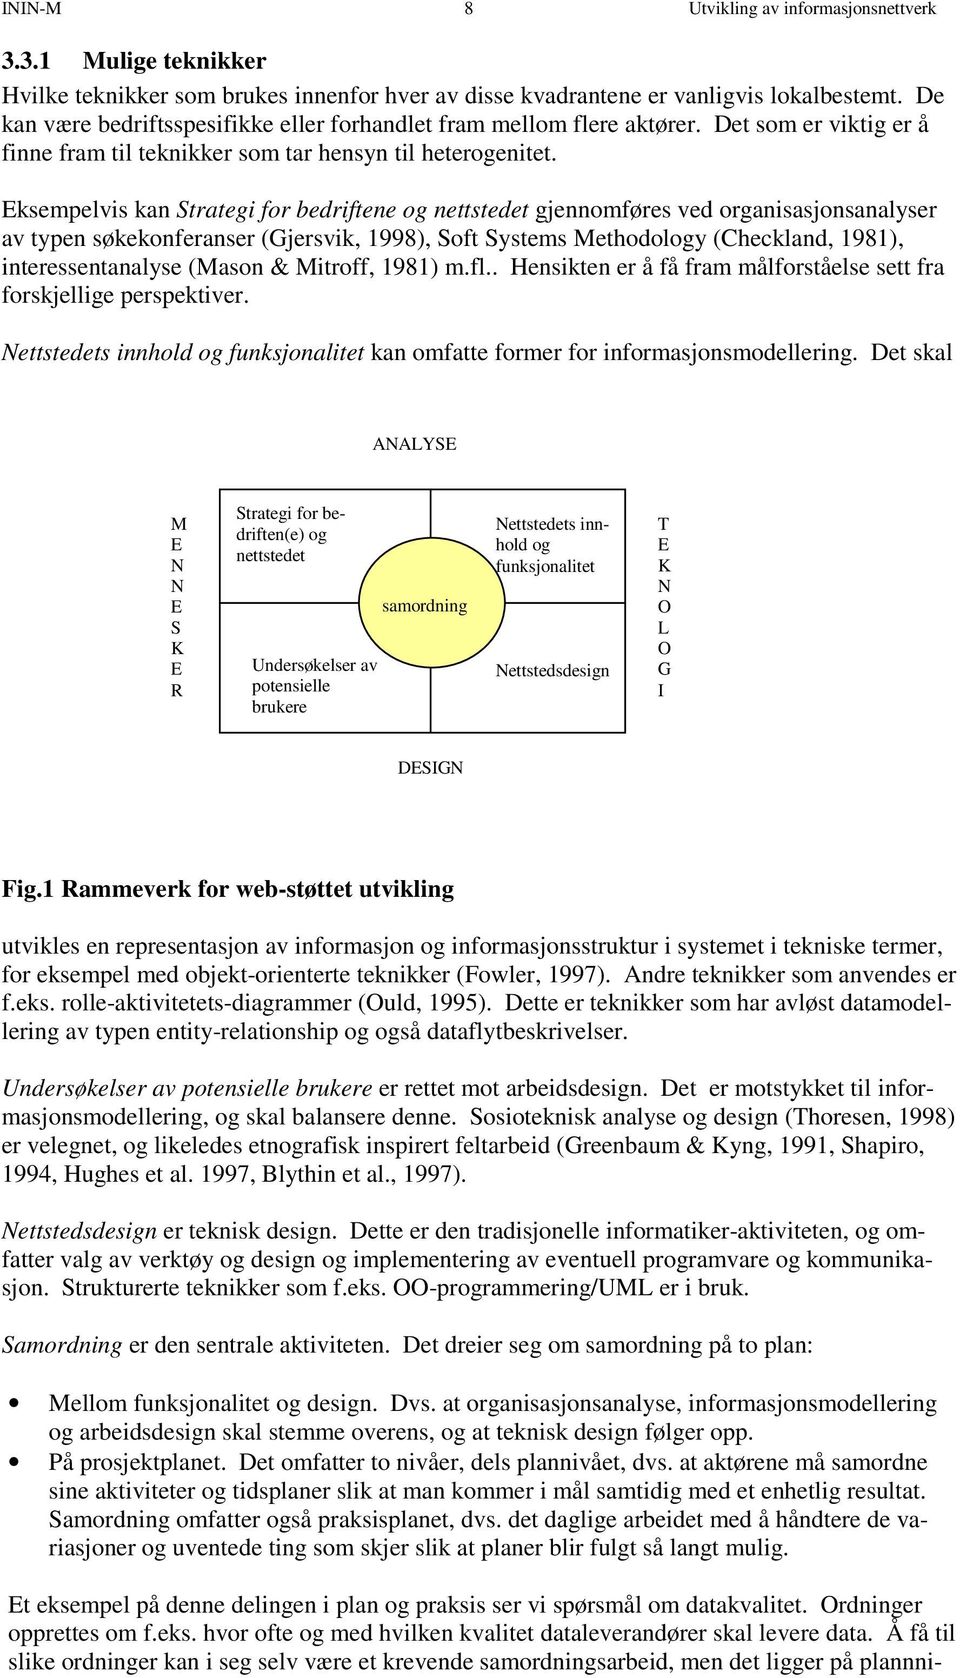 Eksempelvis kan Strategi for bedriftene og nettstedet gjennomføres ved organisasjonsanalyser av typen søkekonferanser (Gjersvik, 1998), Soft Systems Methodology (Checkland, 1981), interessentanalyse